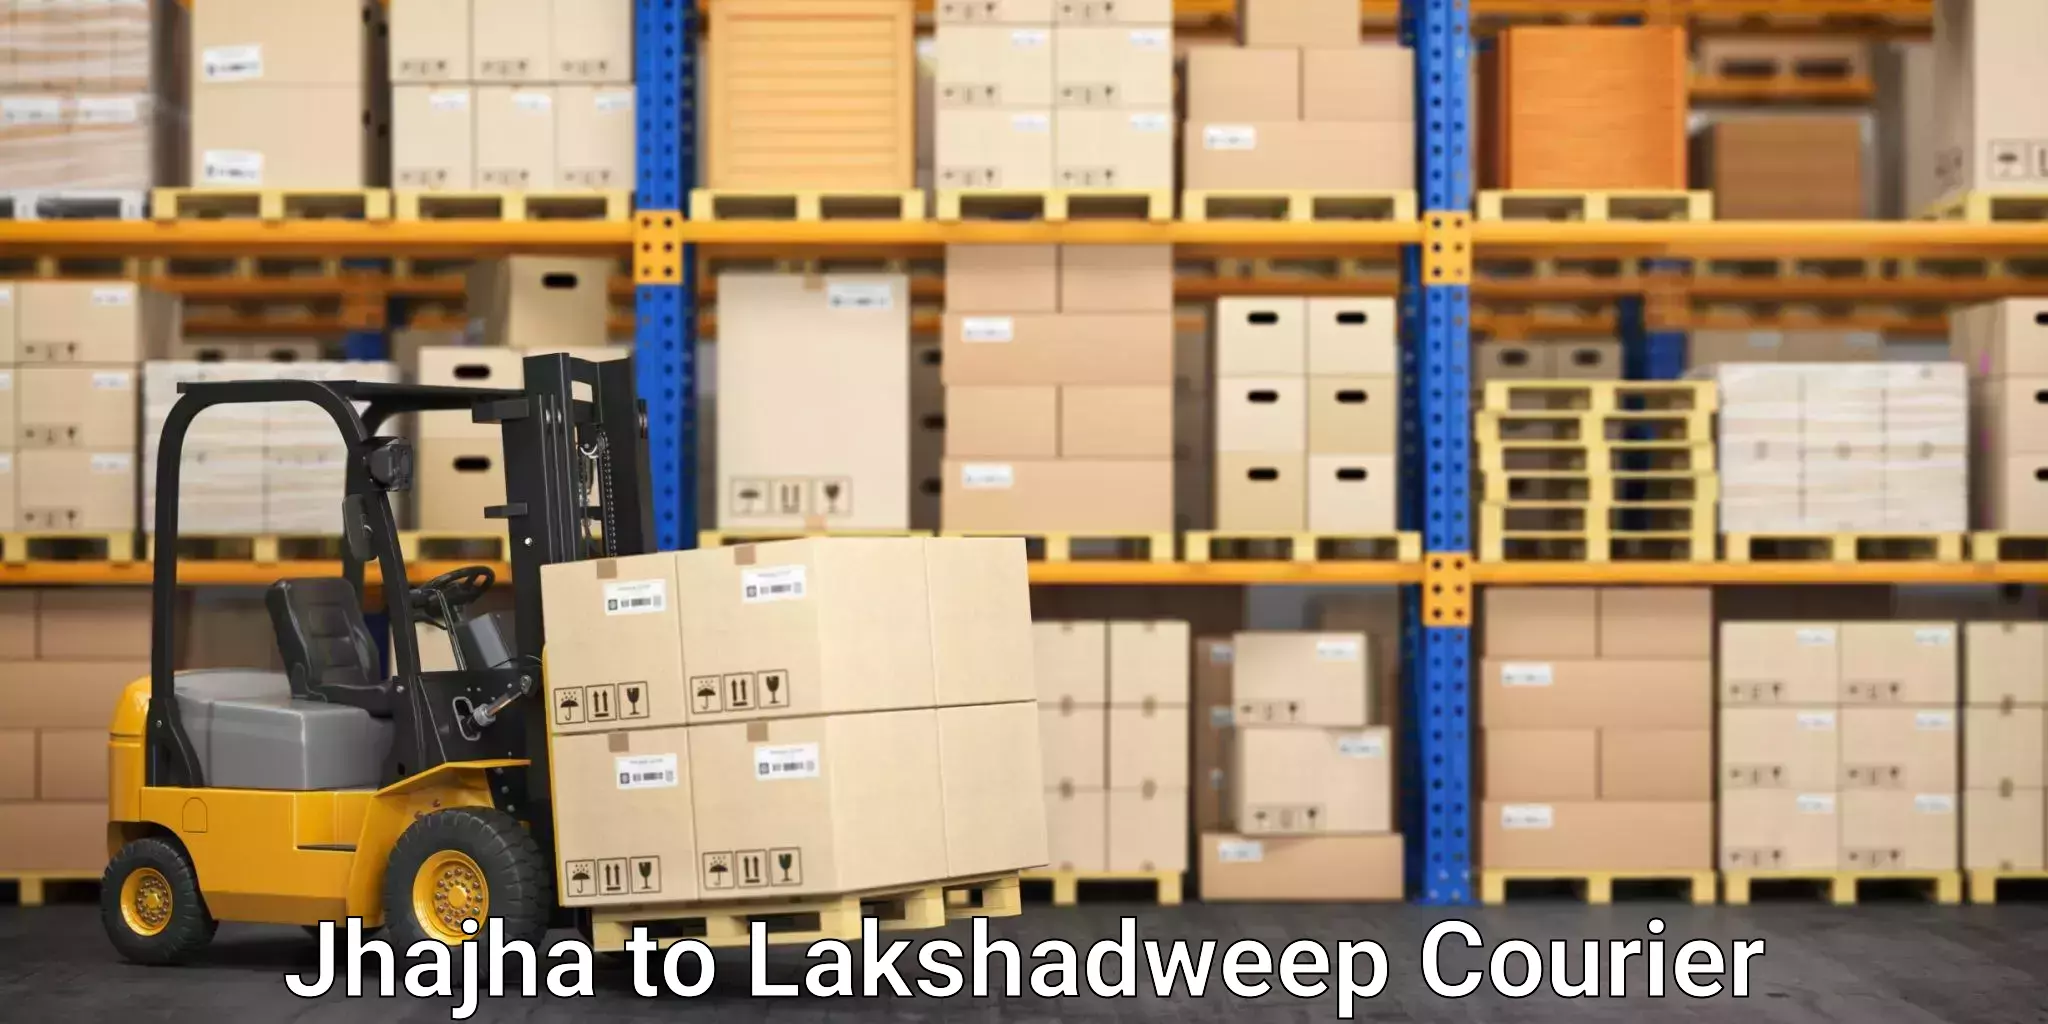 Moving and handling services Jhajha to Lakshadweep